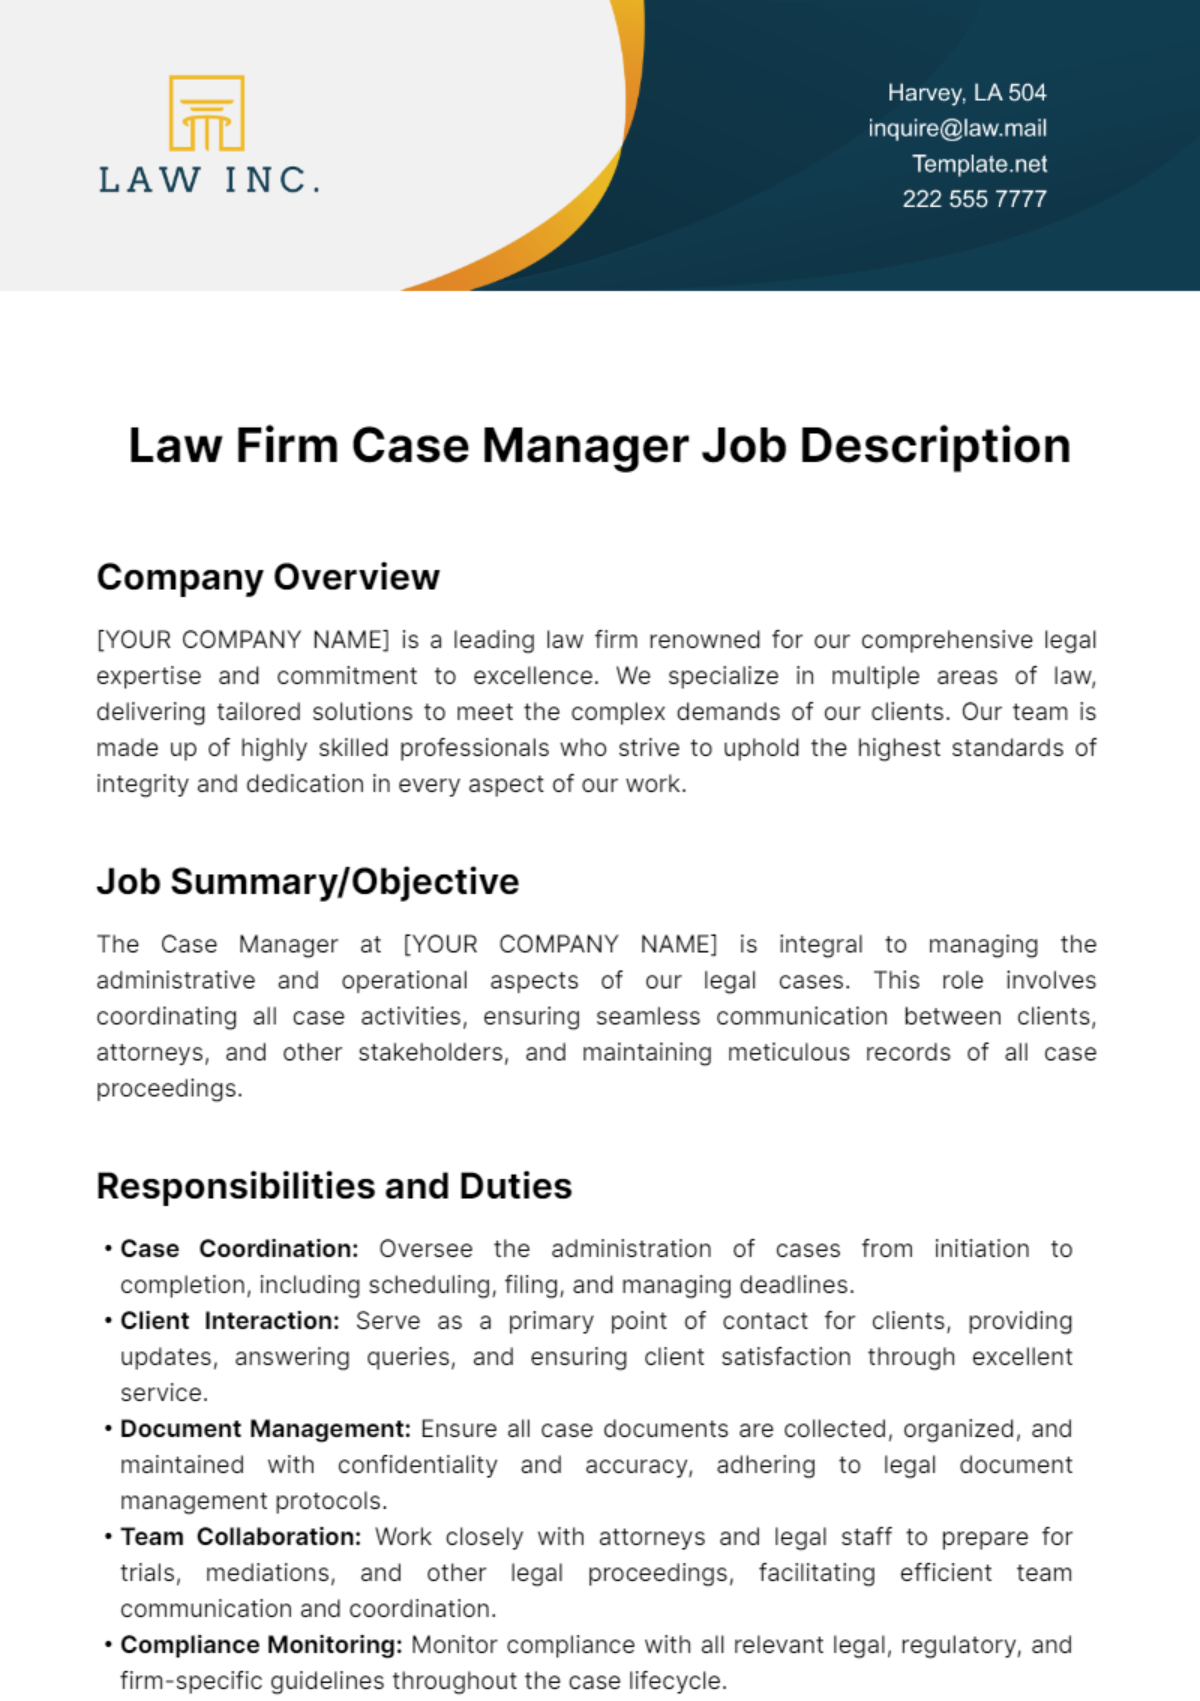 Law Firm Case Manager Job Description Template